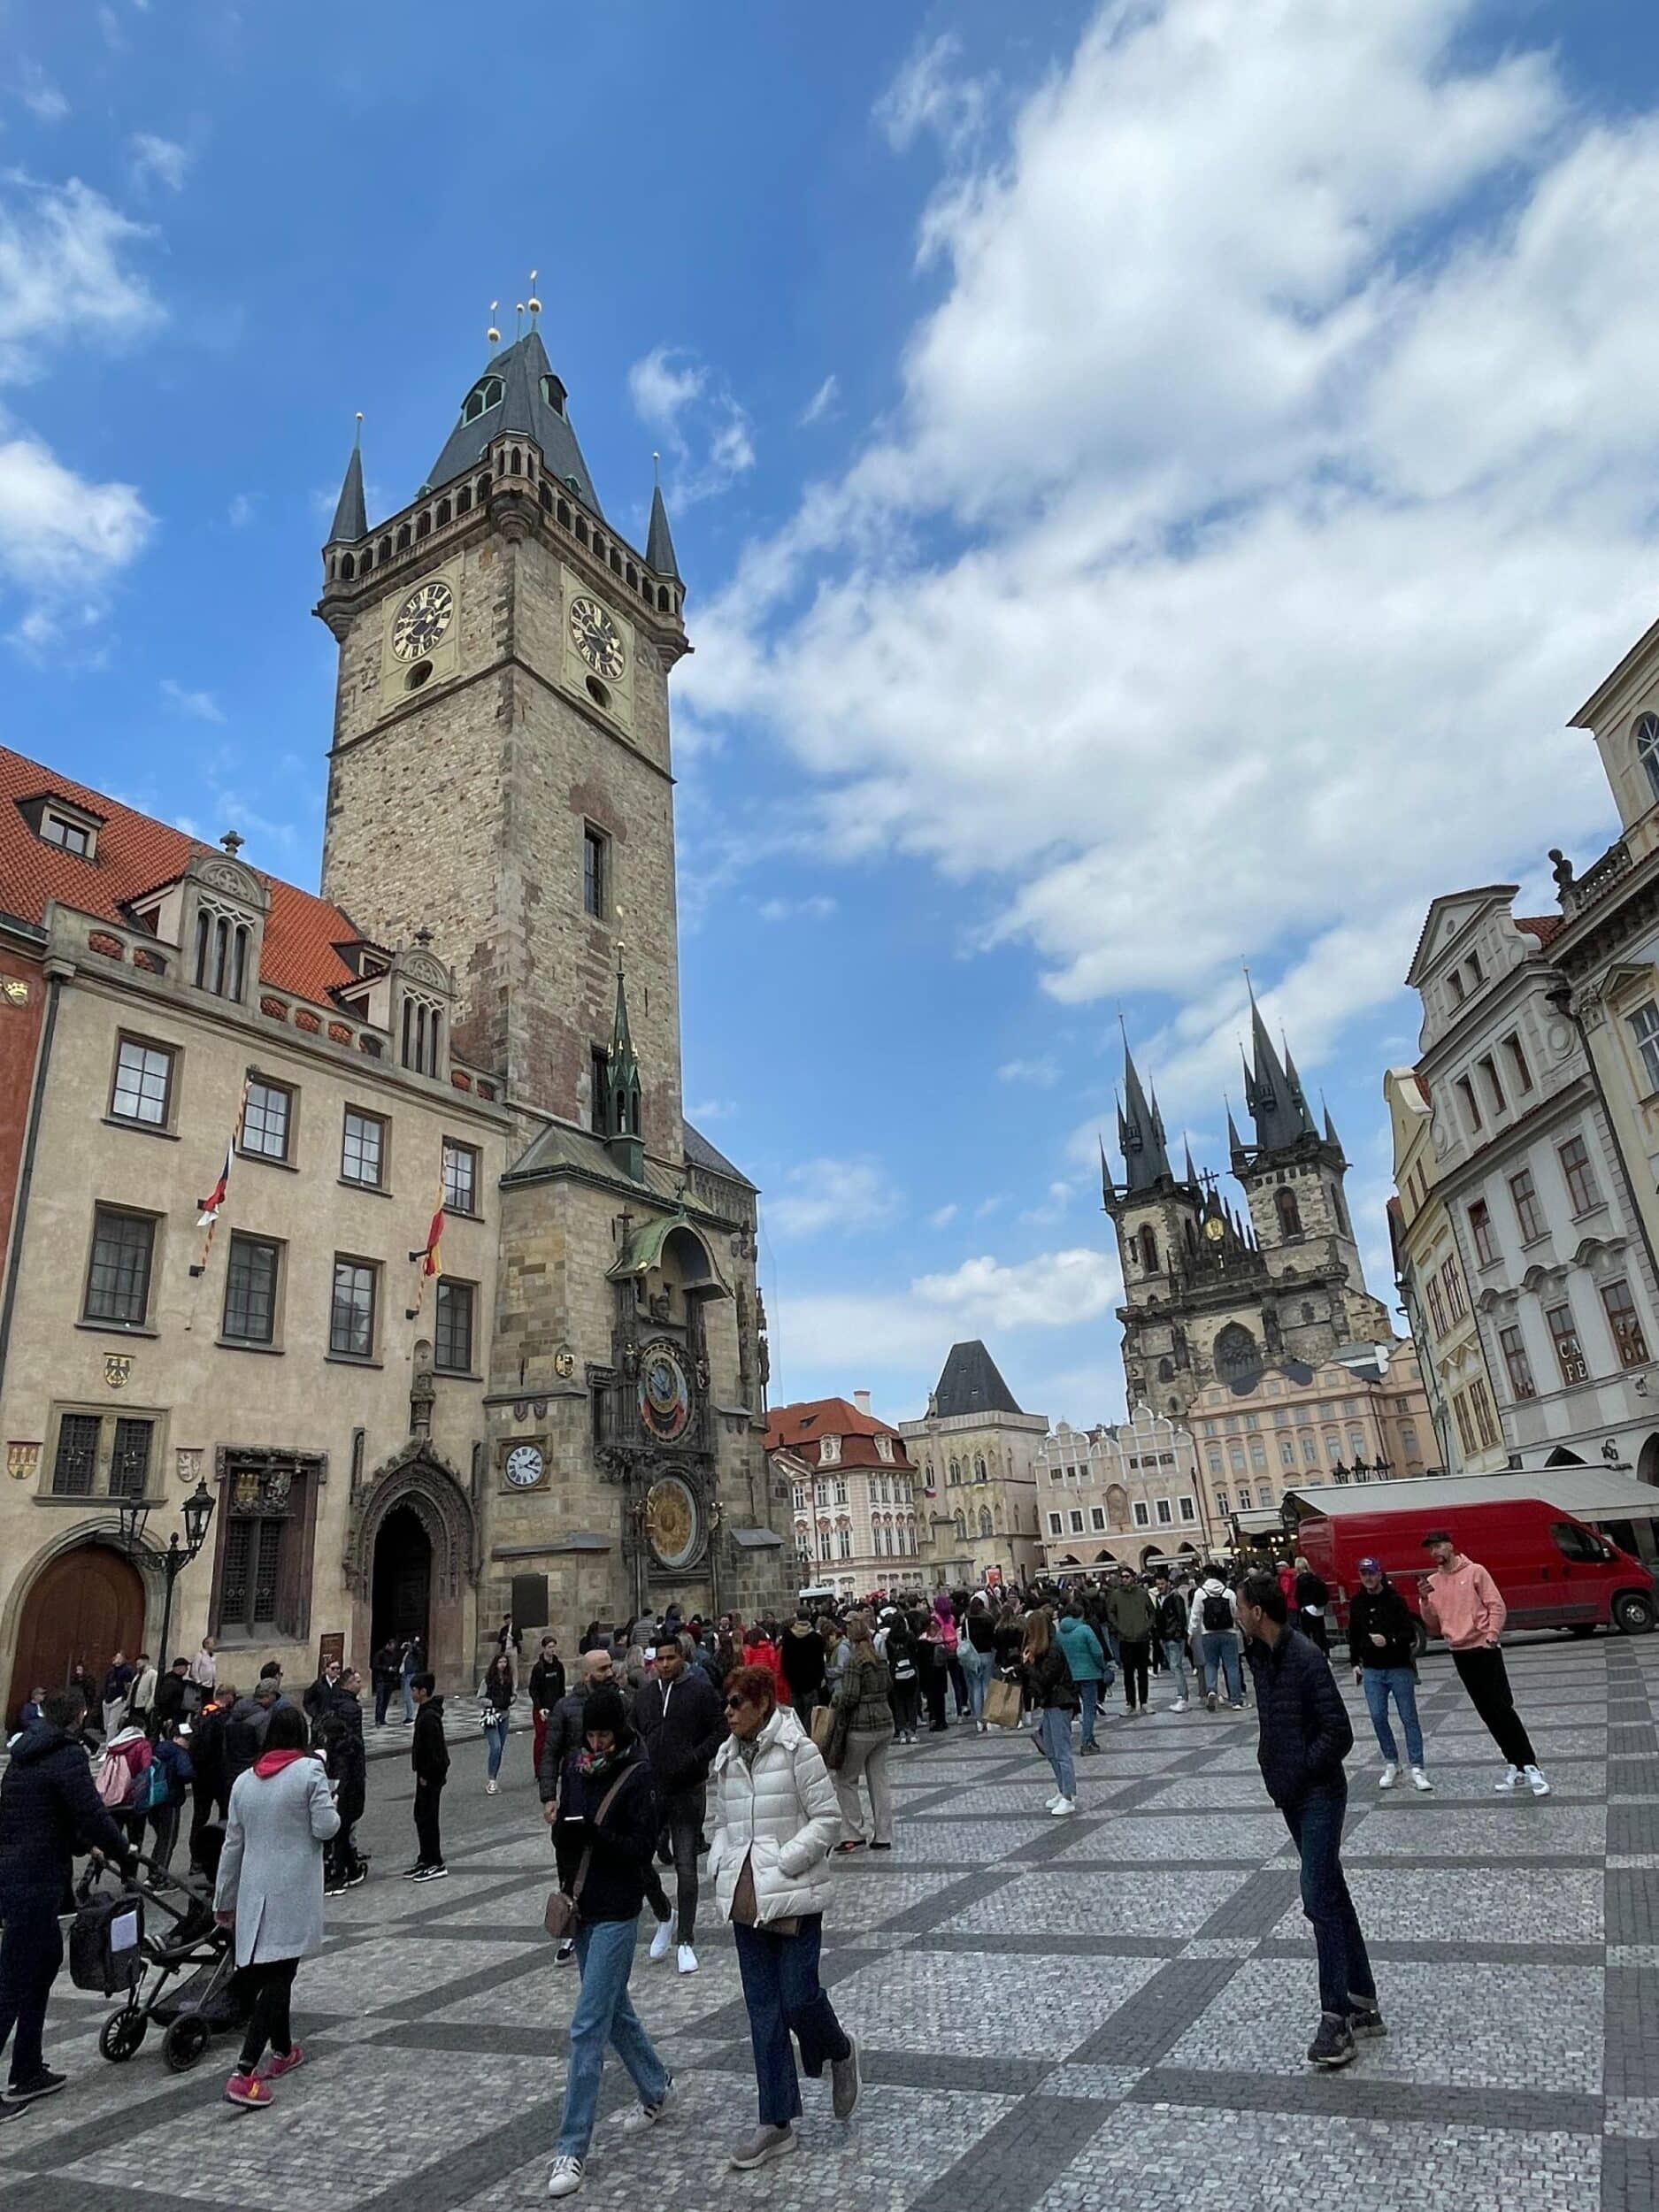 Prague Place de la Vieille Ville